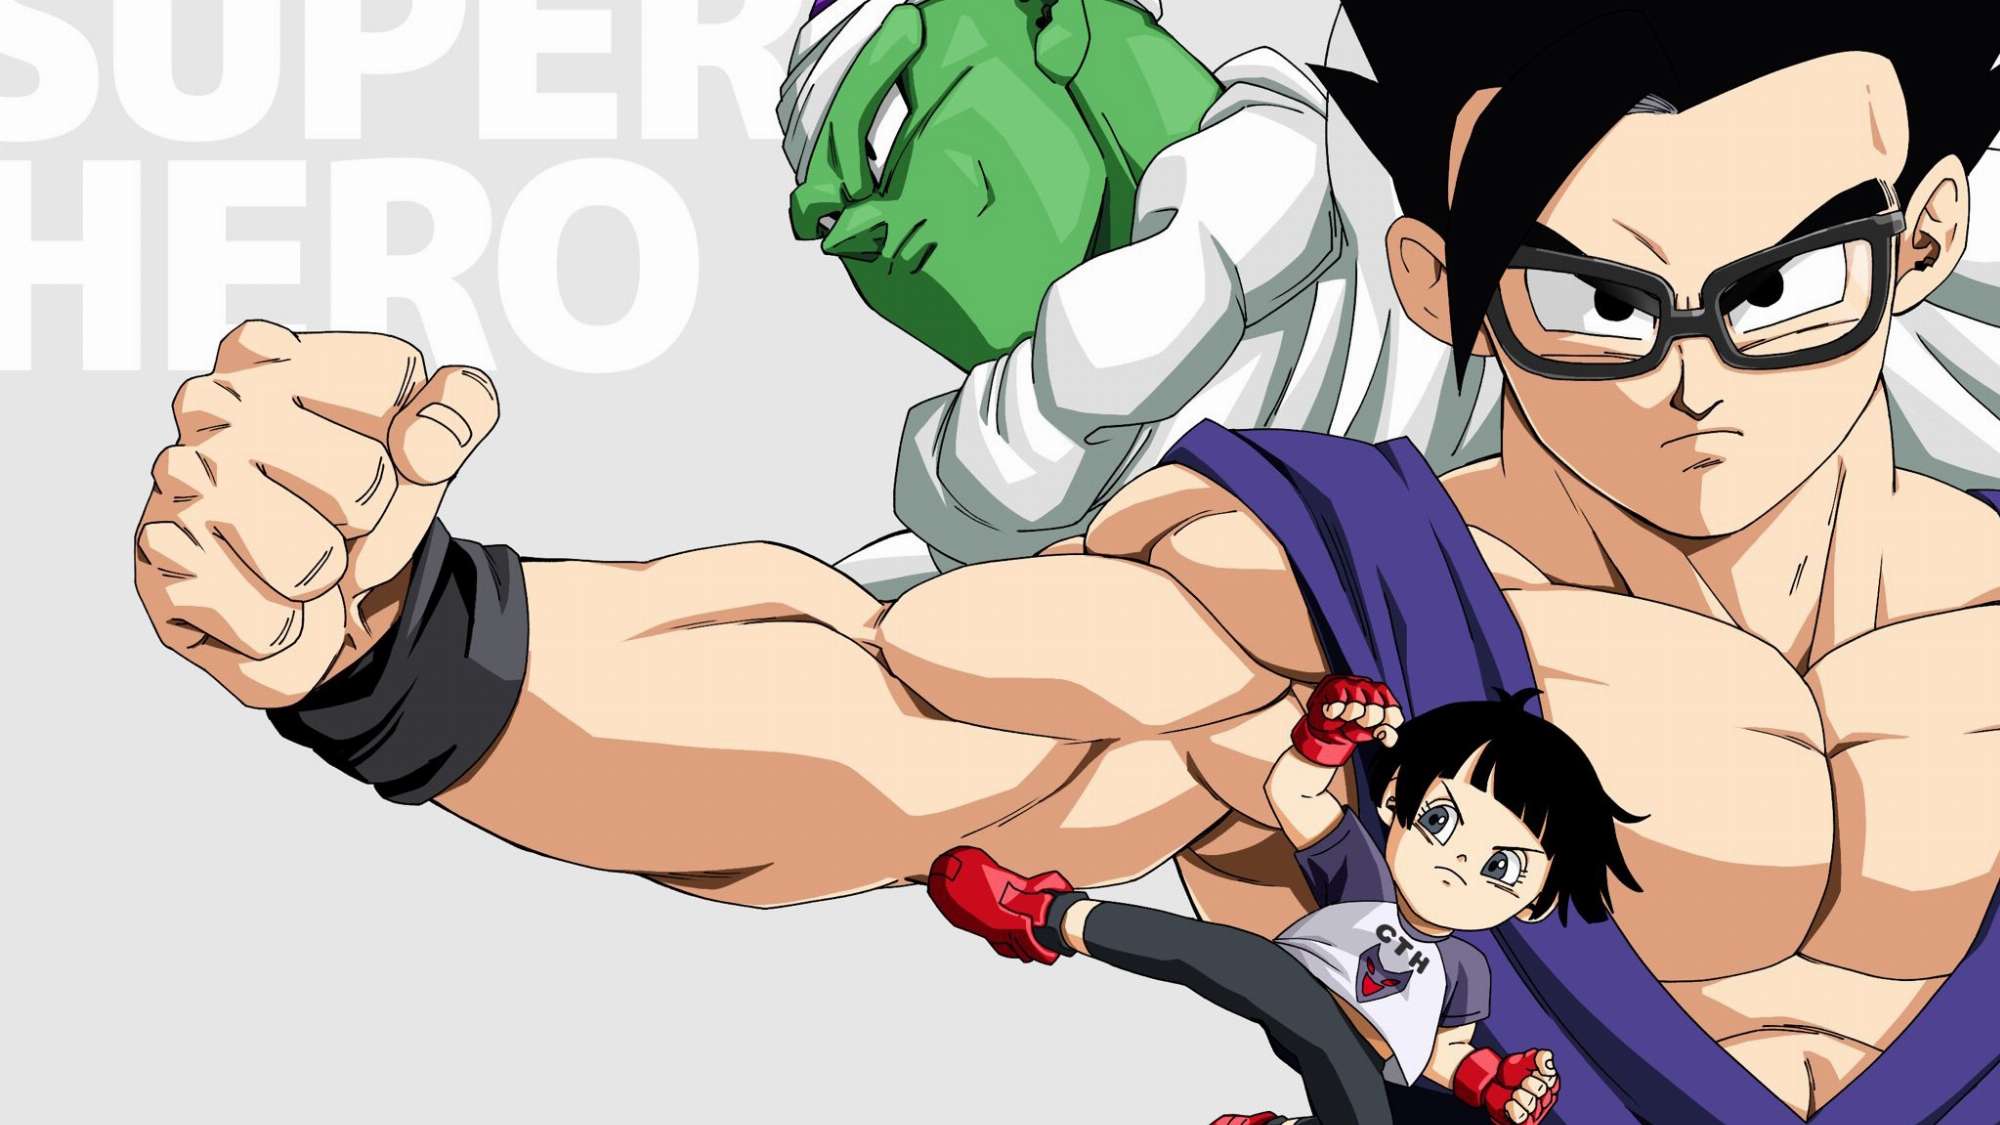 Nhầm lẫn doanh thu giúp Dragon Ball Super: Super Hero kiếm về gần 200 triệu USD ở Colombia